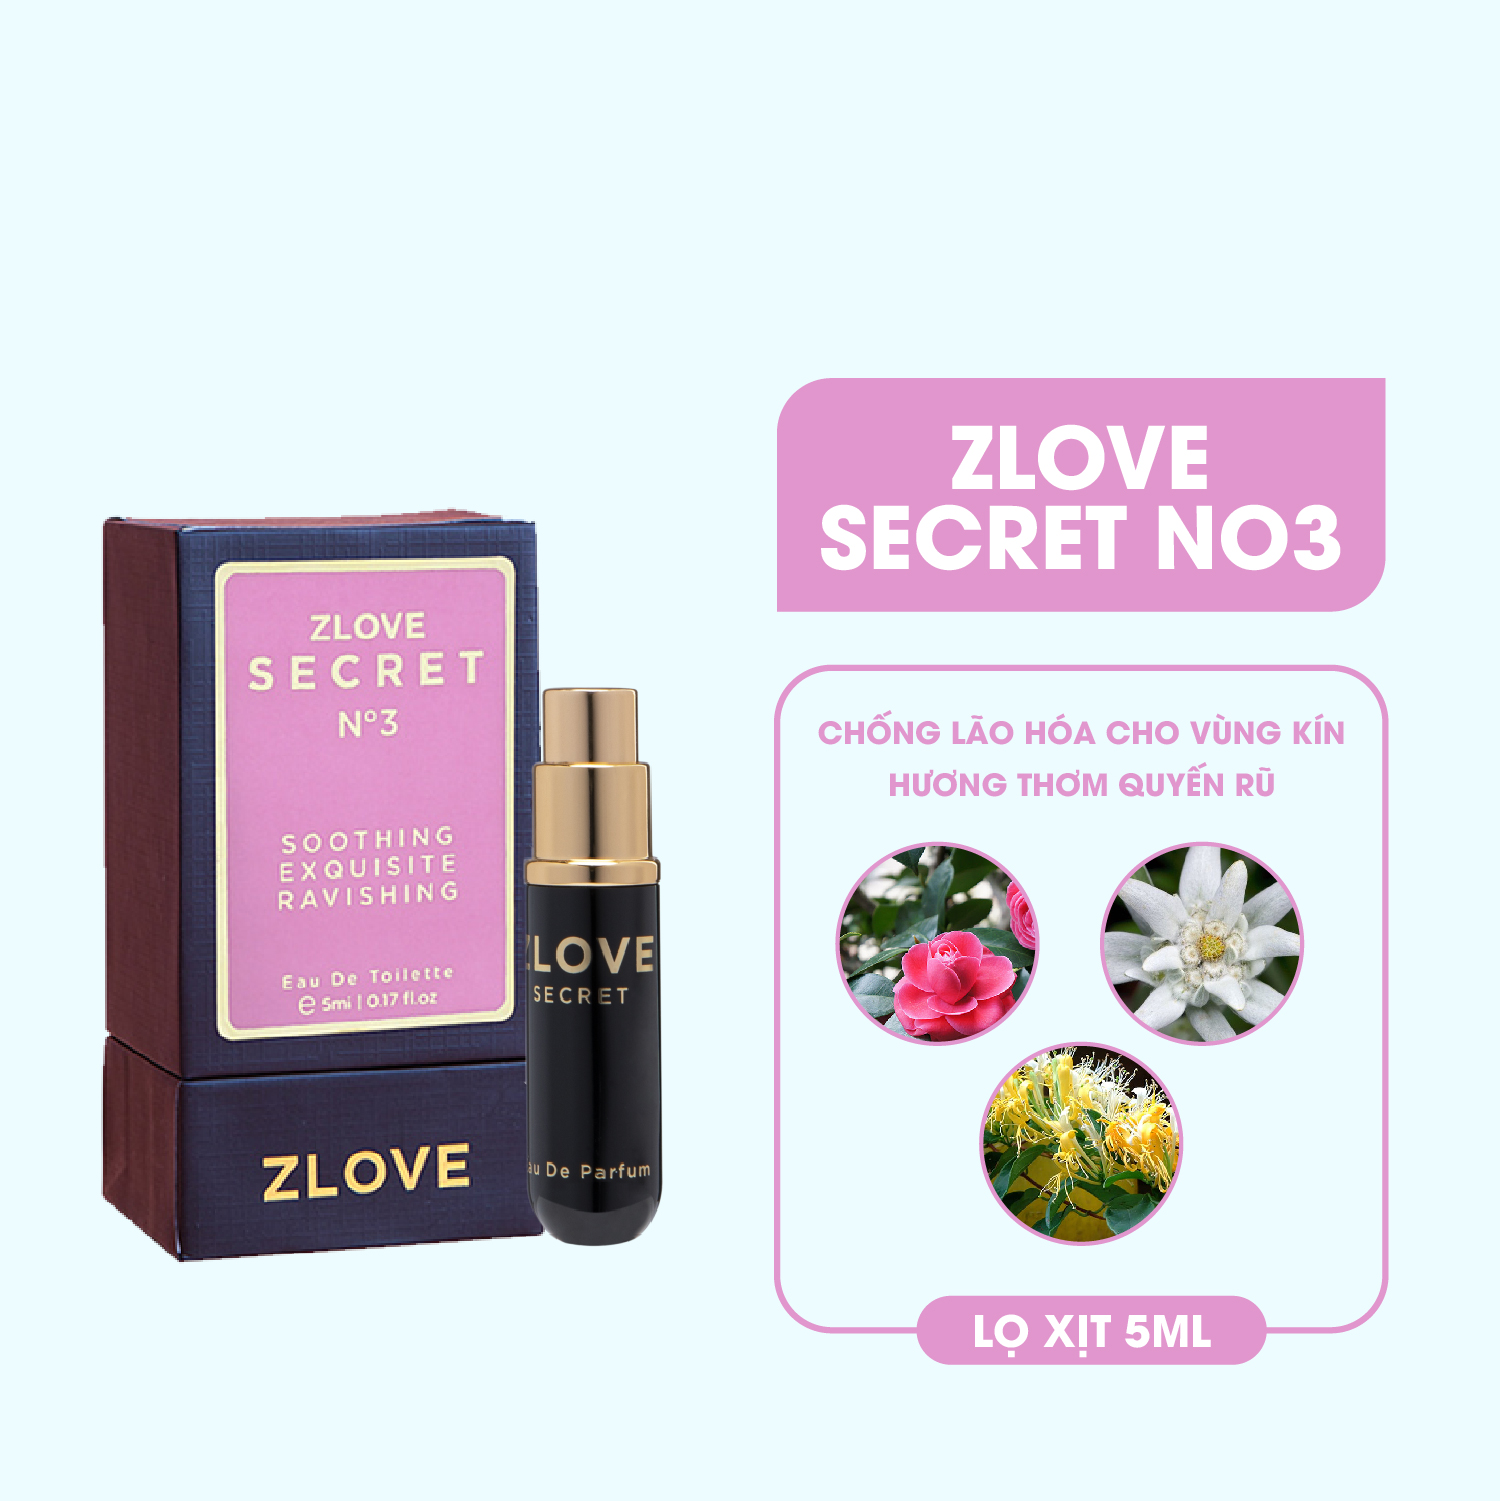 Nước hoa vùng kín nữ cao cấp chính hãng Zlove Secret 5ml với hương hoa mê hoặc, quyến rũ, nữ tính (Hương số 3)